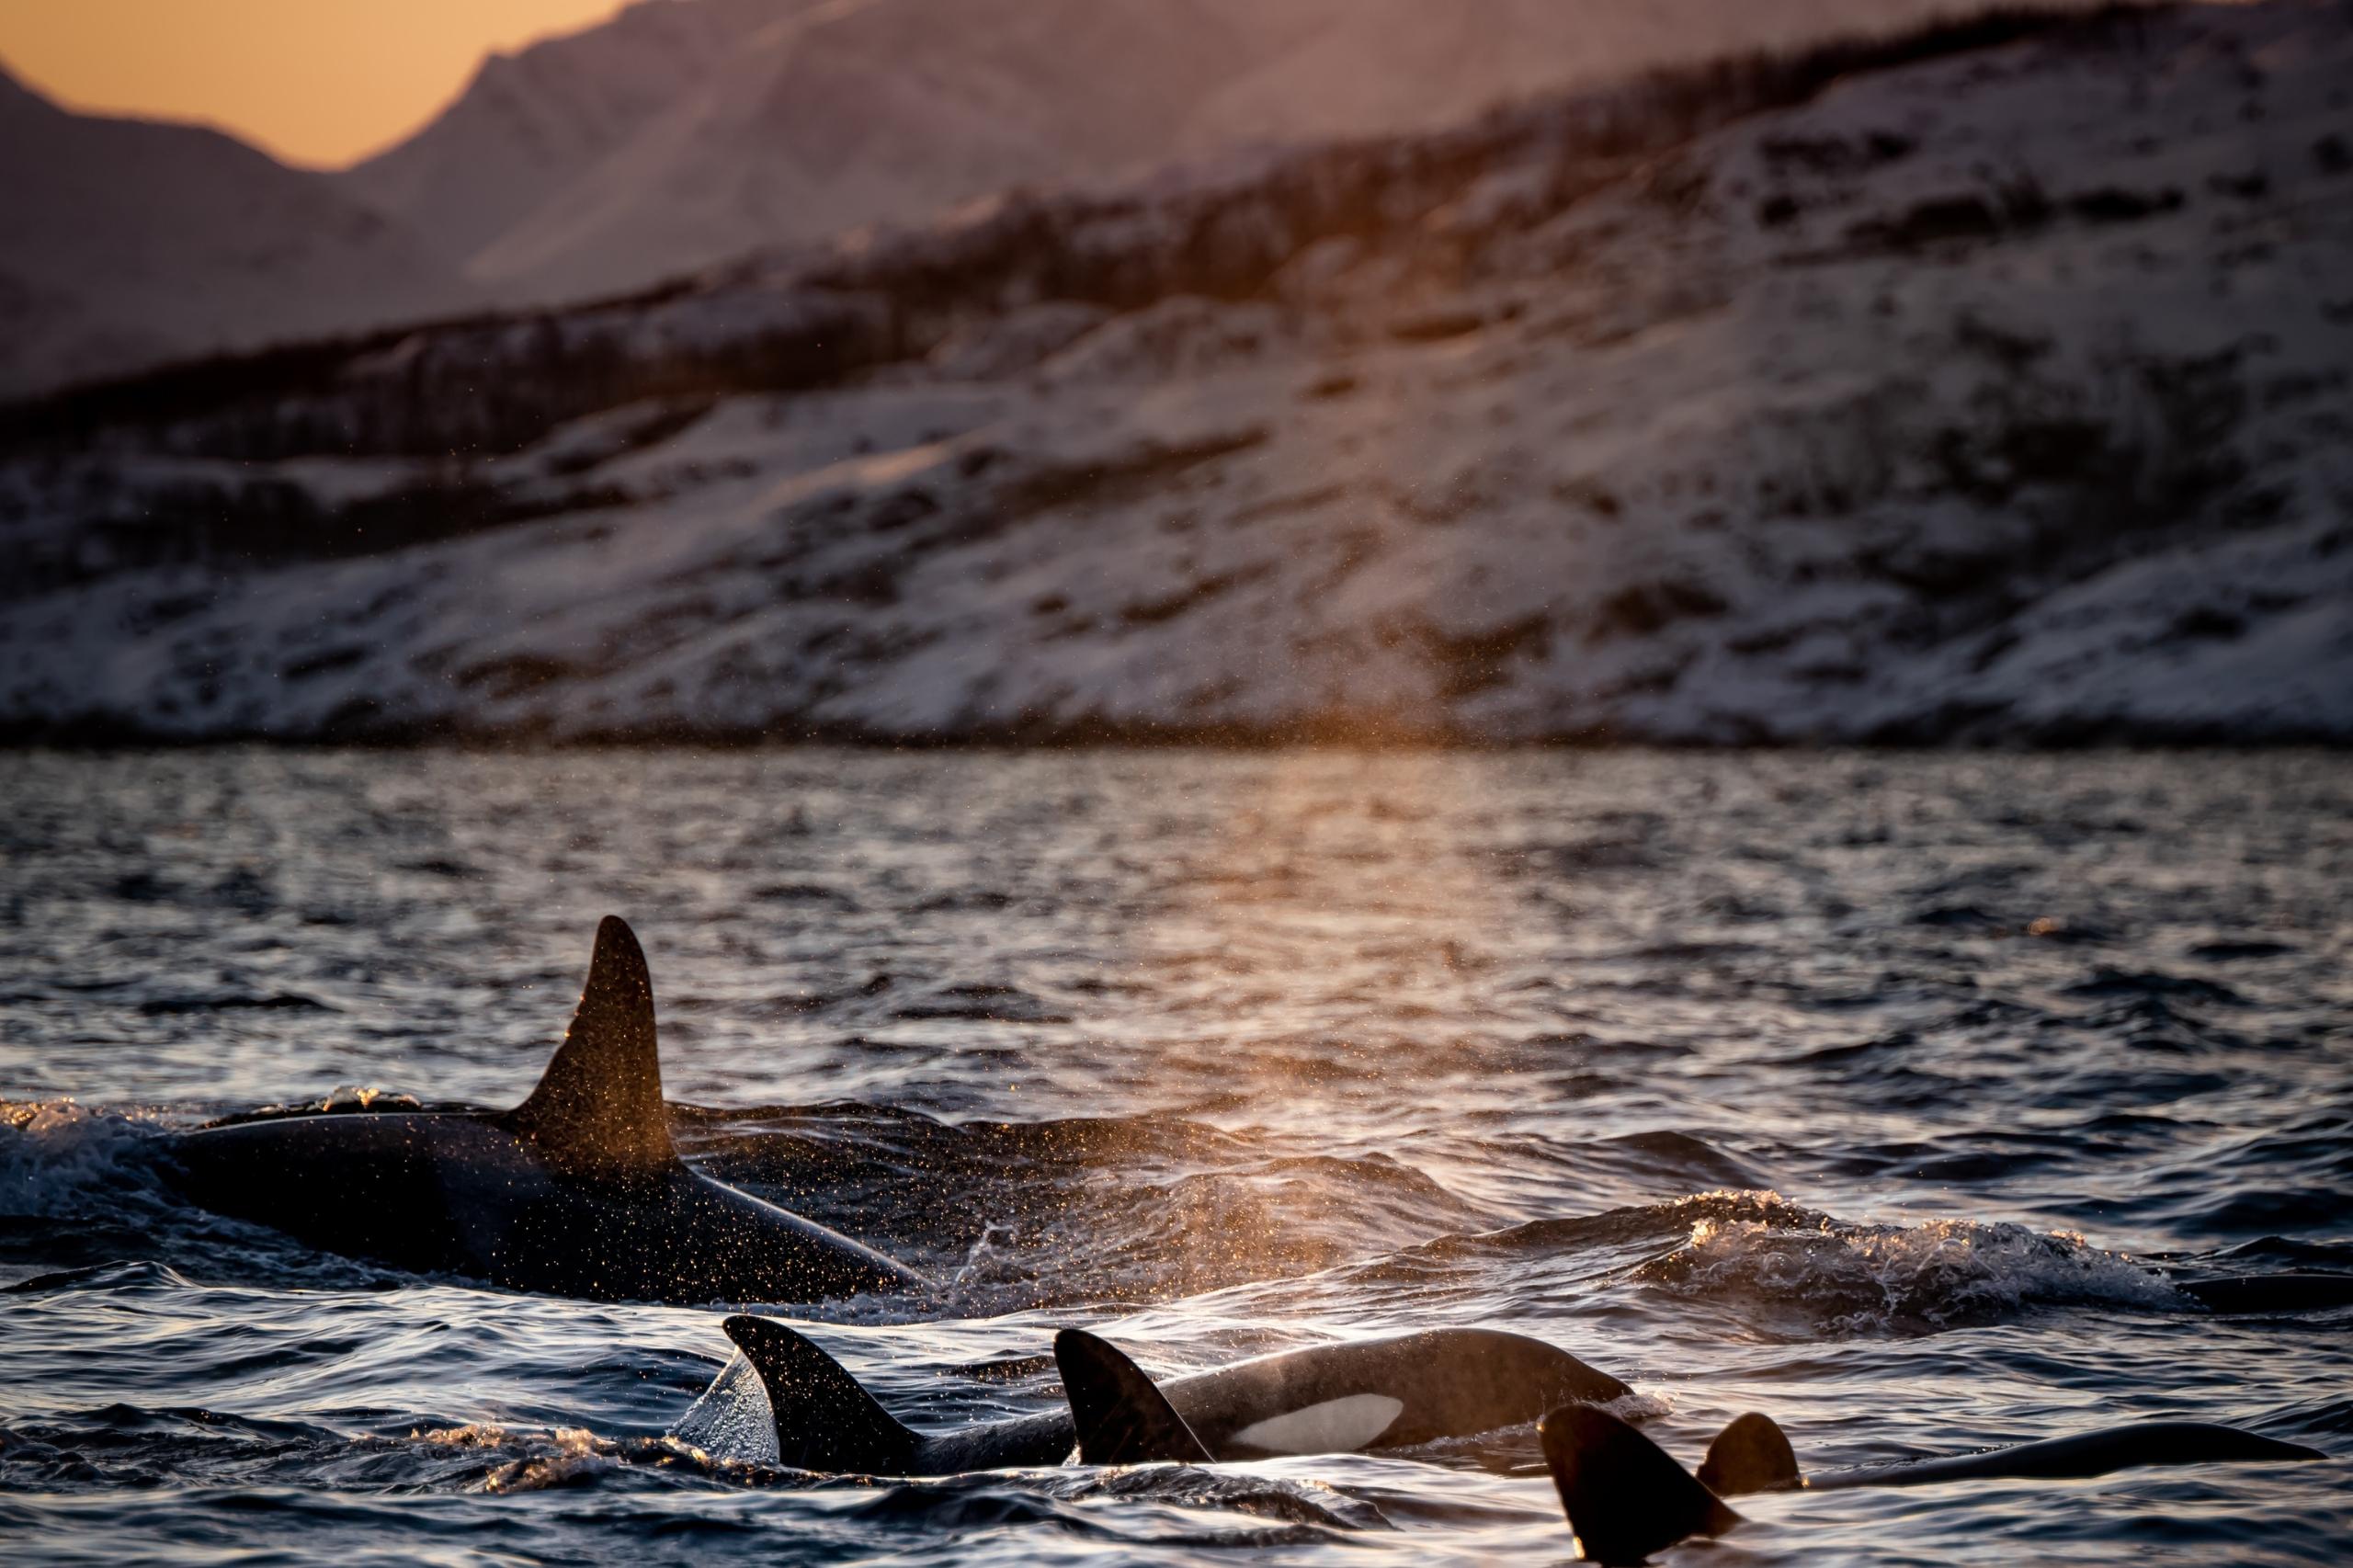 Wale in der freien Wildbahn beobachten zu dürfen, ist ein wahres Privileg - dank Walsafaris ist dies in Norwegen möglich. 